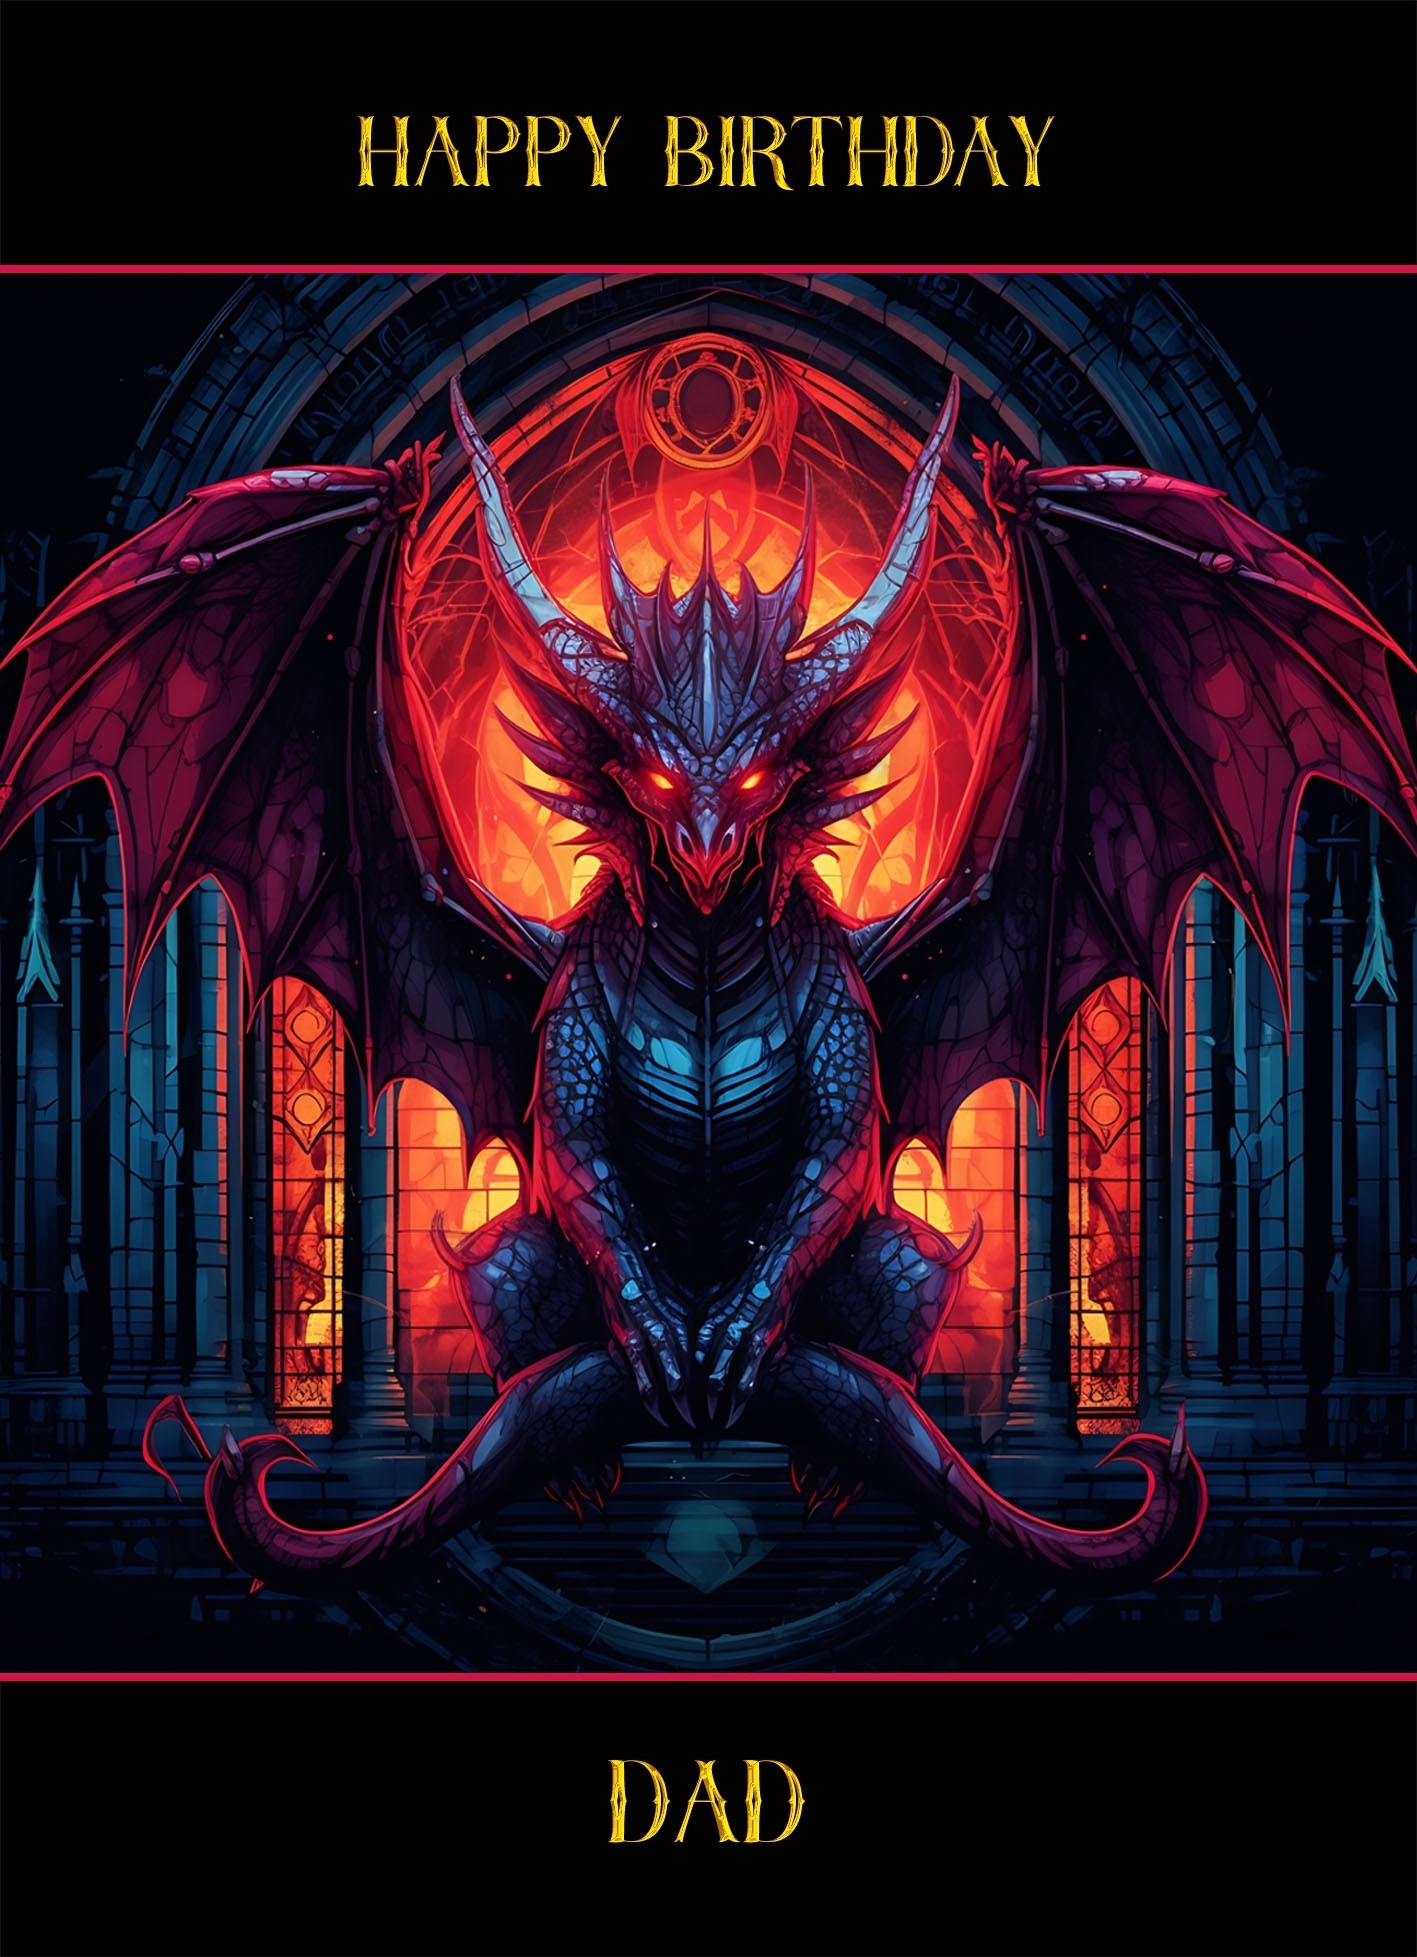 Gothic Fantasy Dragon Birthday Card For Dad (Design 3)